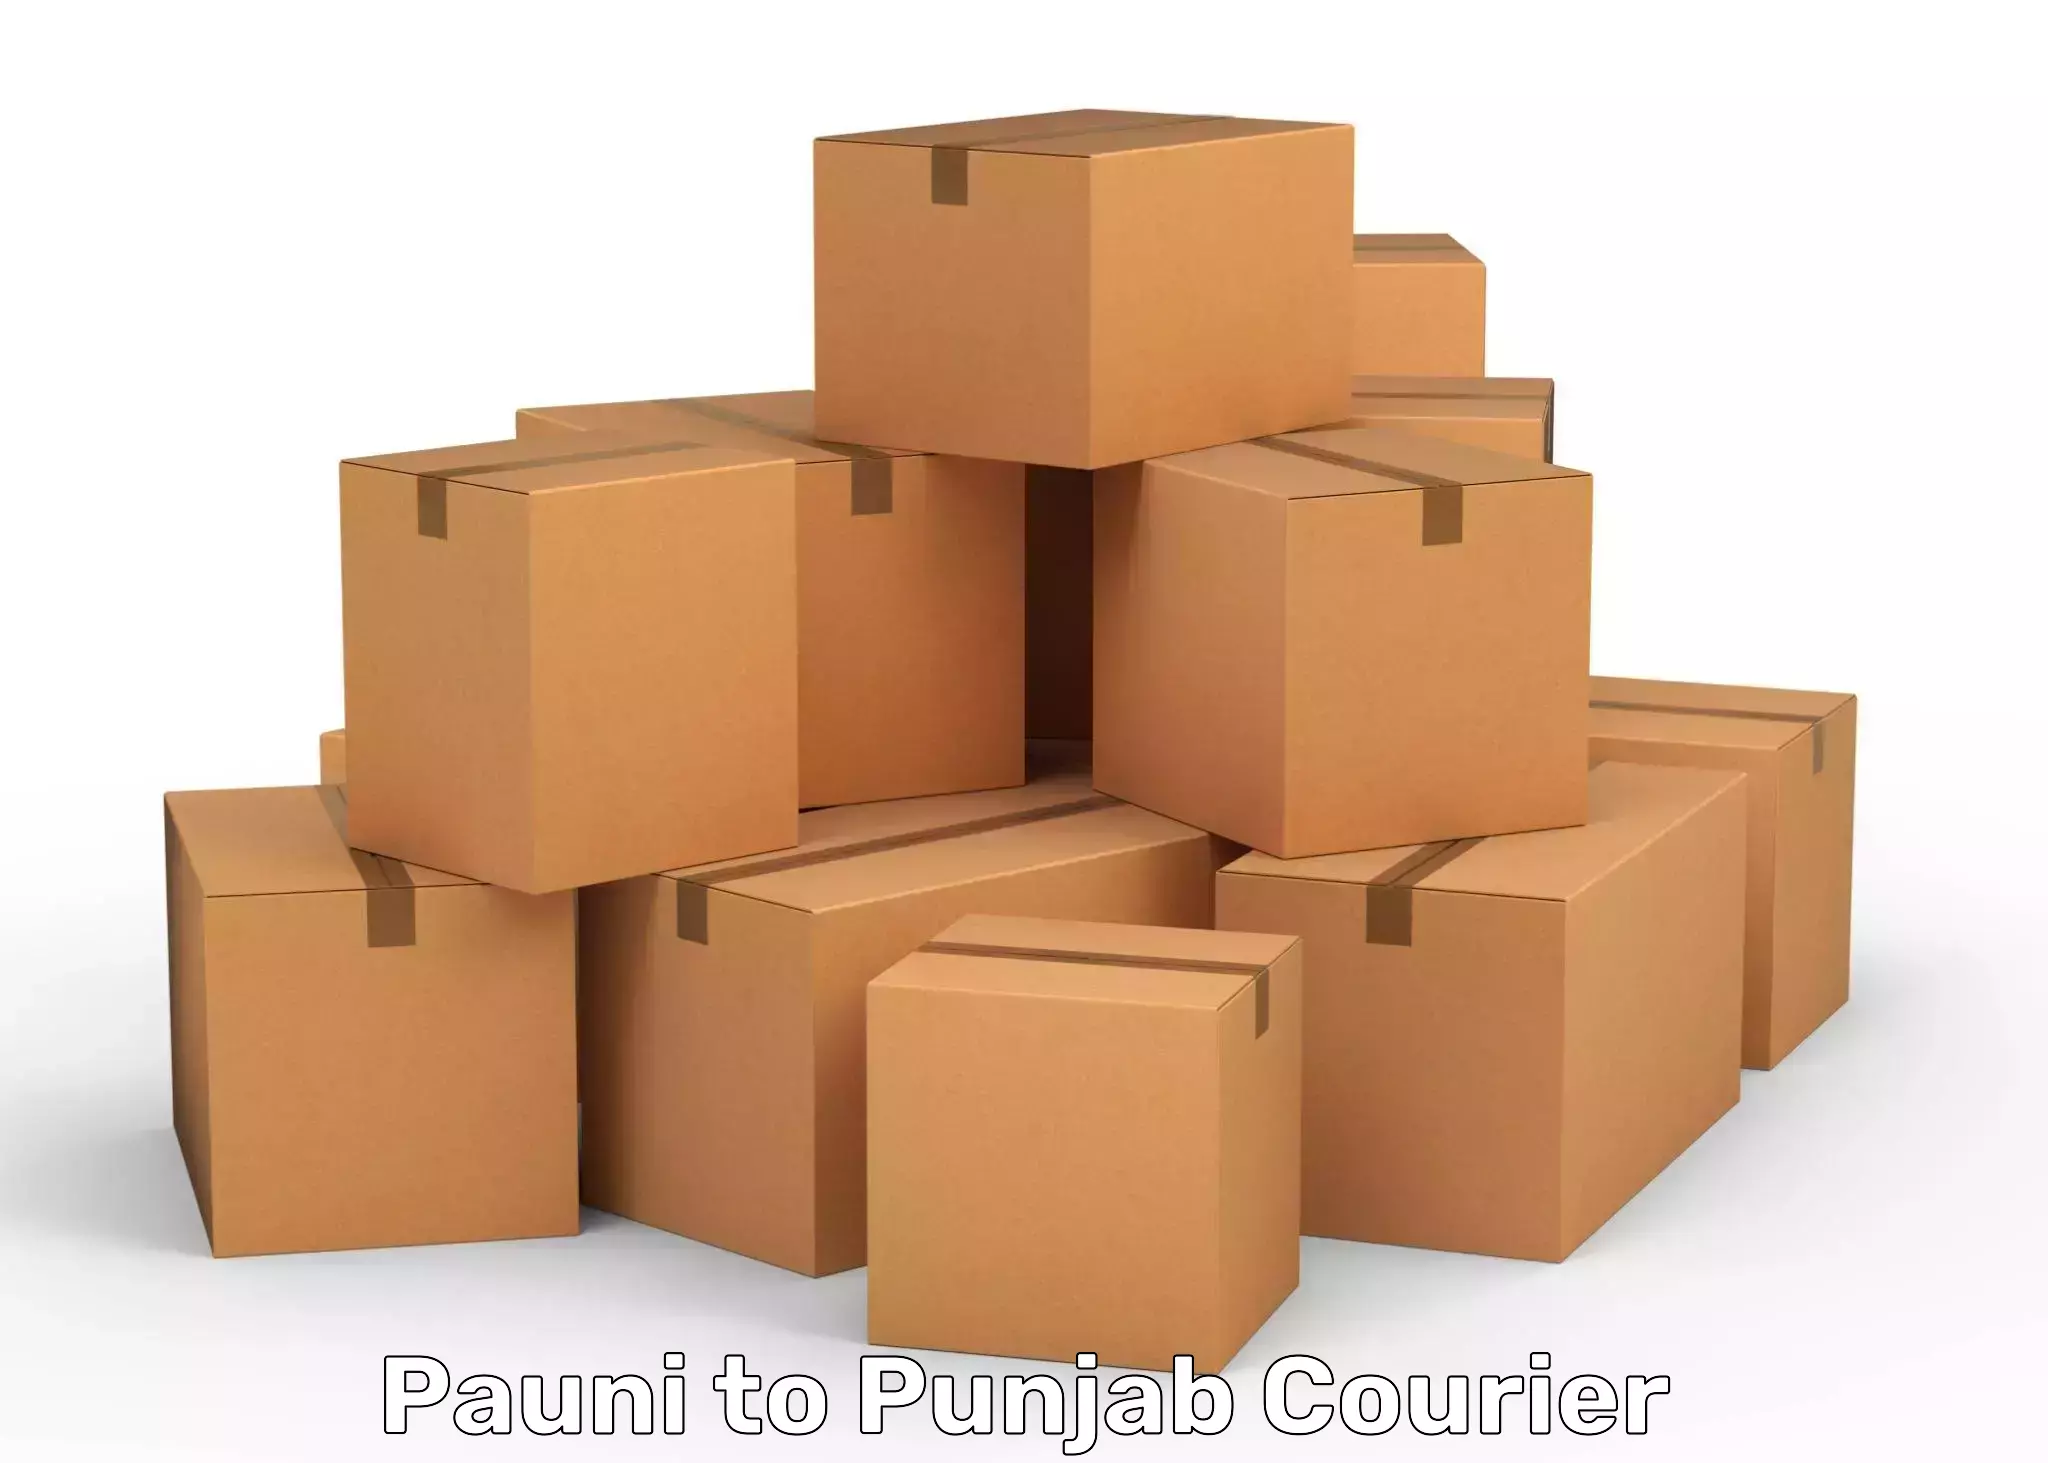 Expedited shipping methods Pauni to Central University of Punjab Bathinda